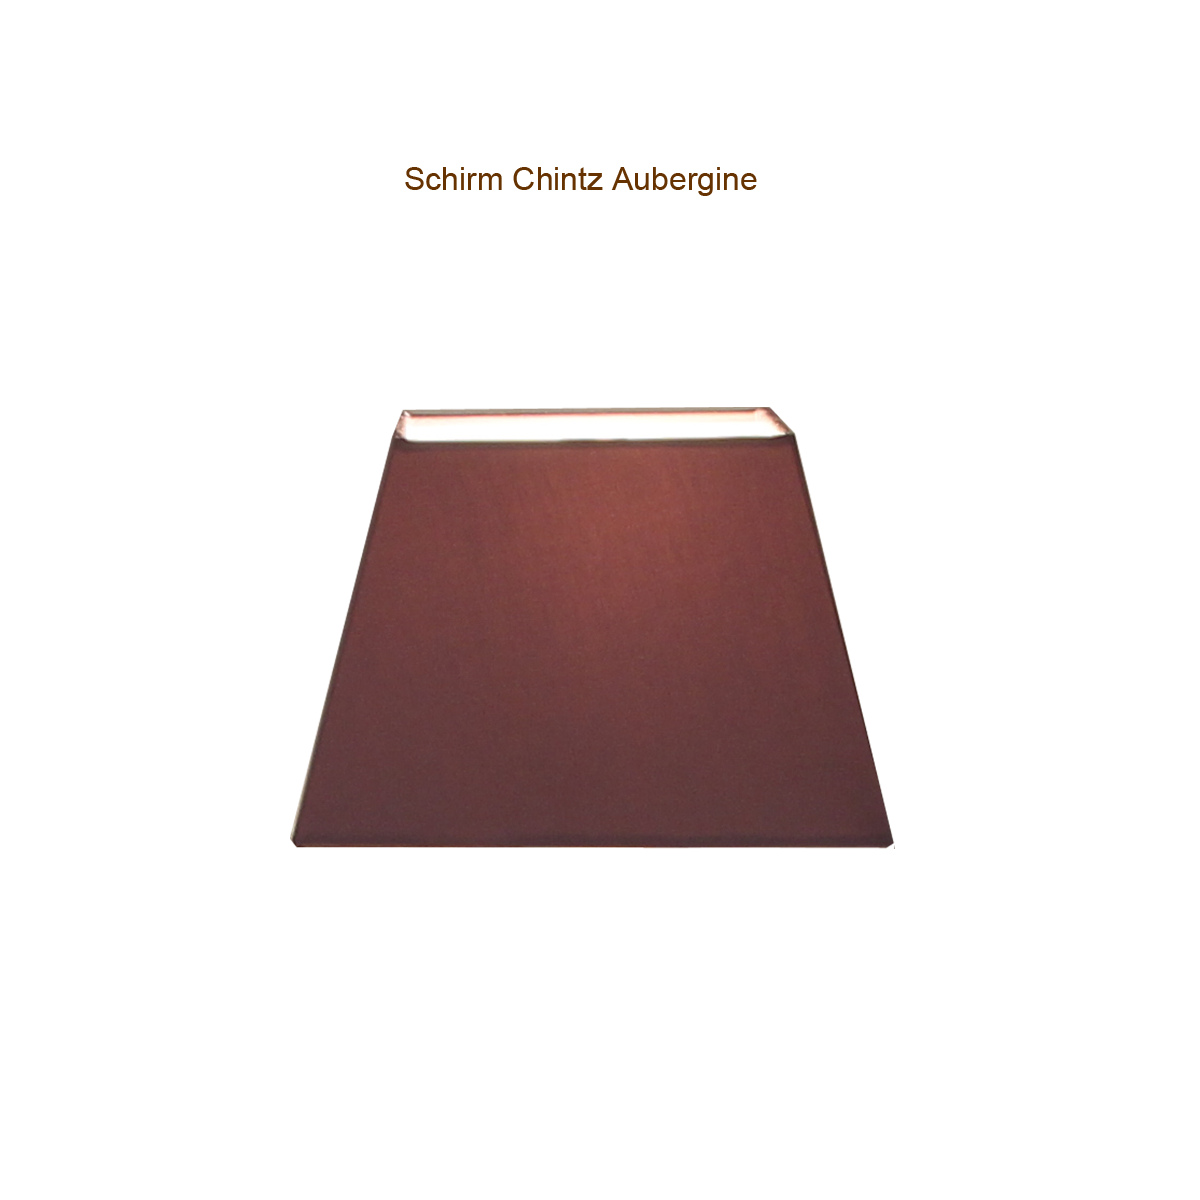 Lampenschirm Eckig Chintz für Tischleuchte 18 x18cm, H=12cm Halterung E27 Farbe nach Wahl